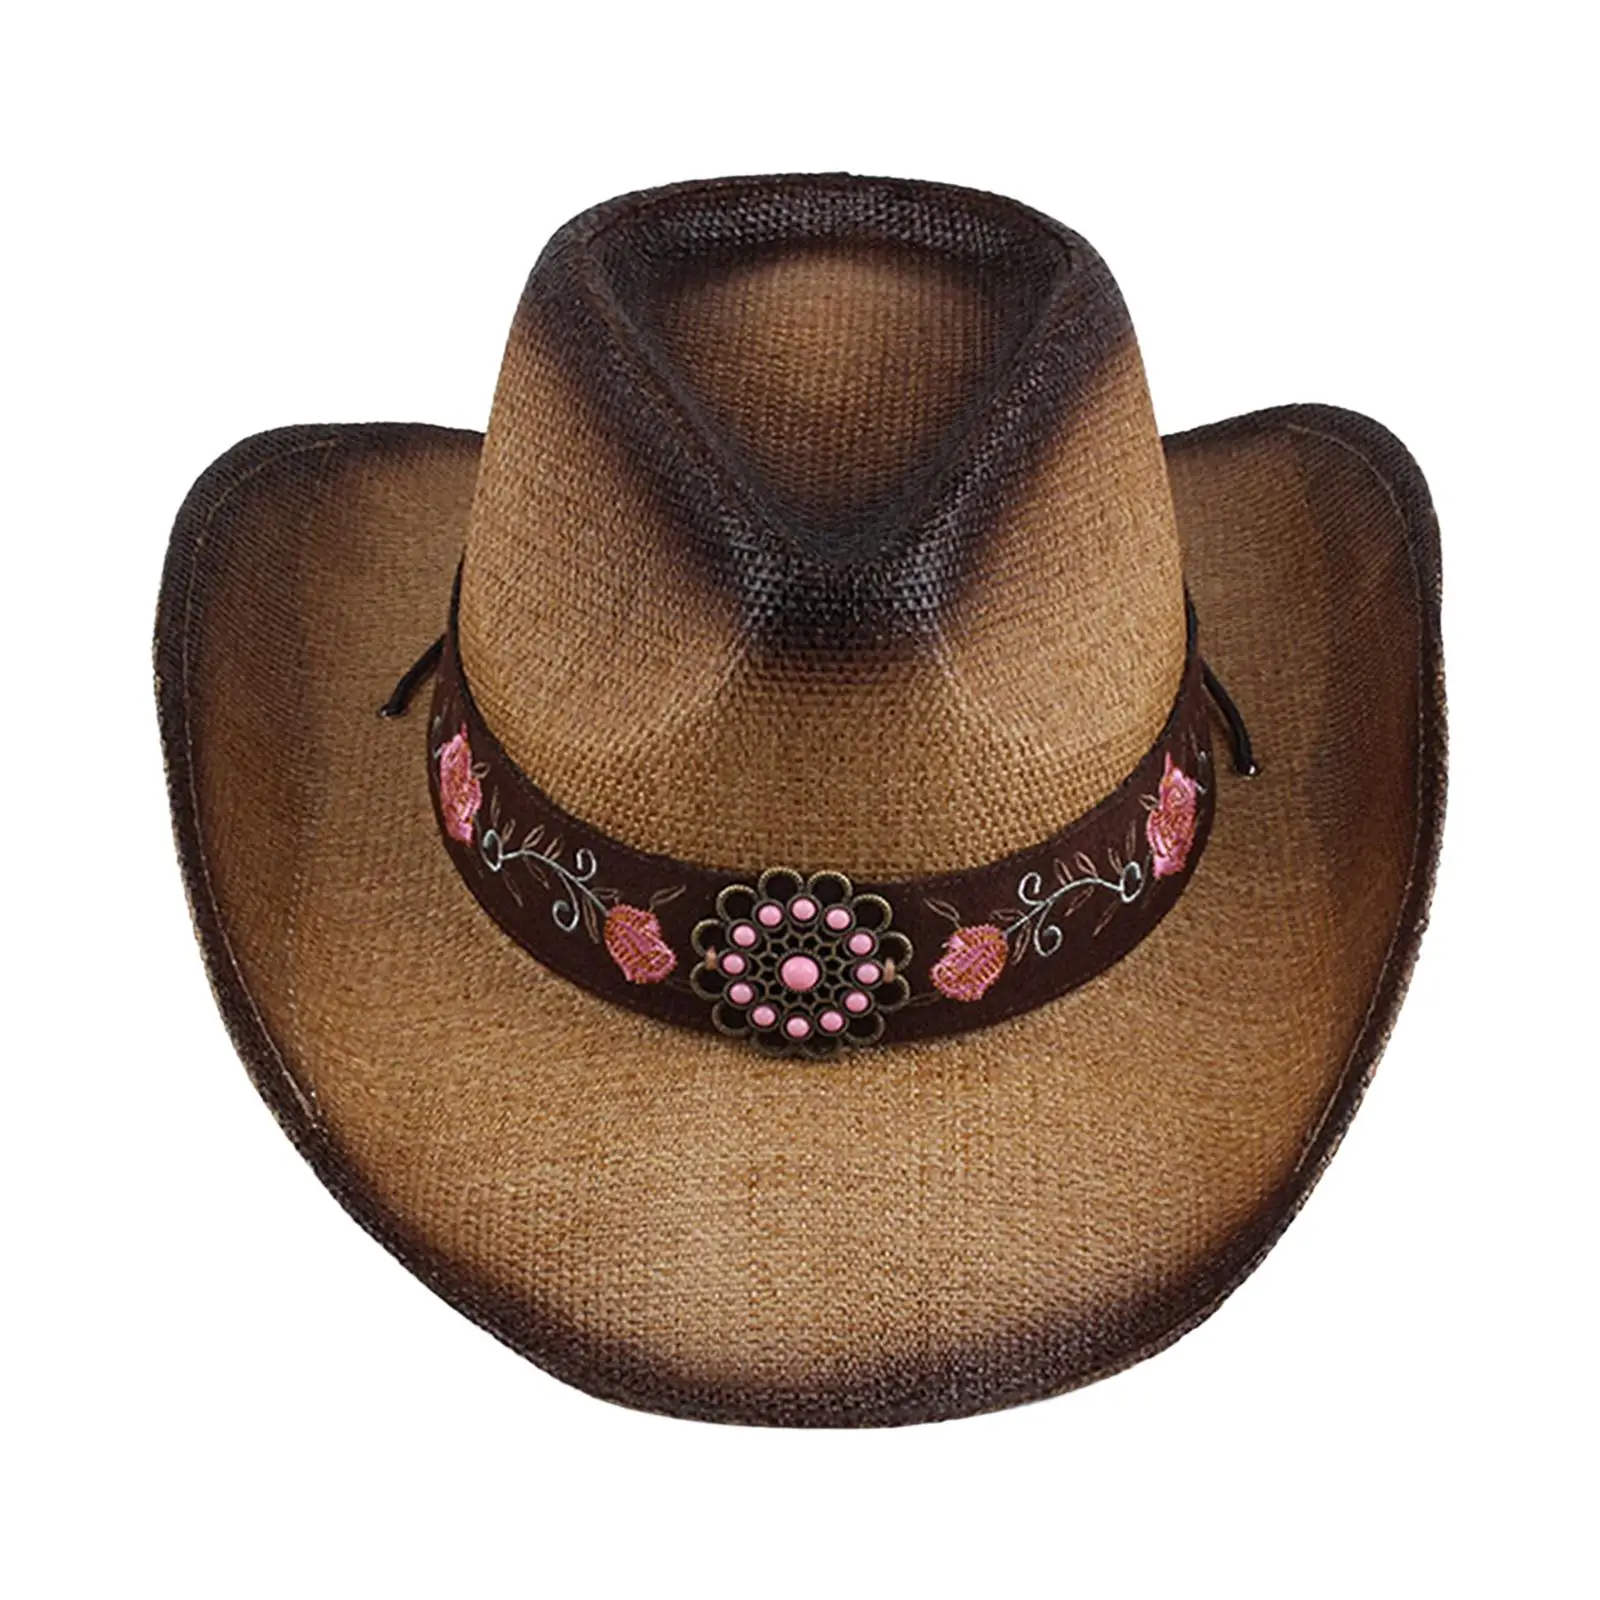 Western  Hat Photo Props Sun Hat Summer Big Brim Straw for Men Women